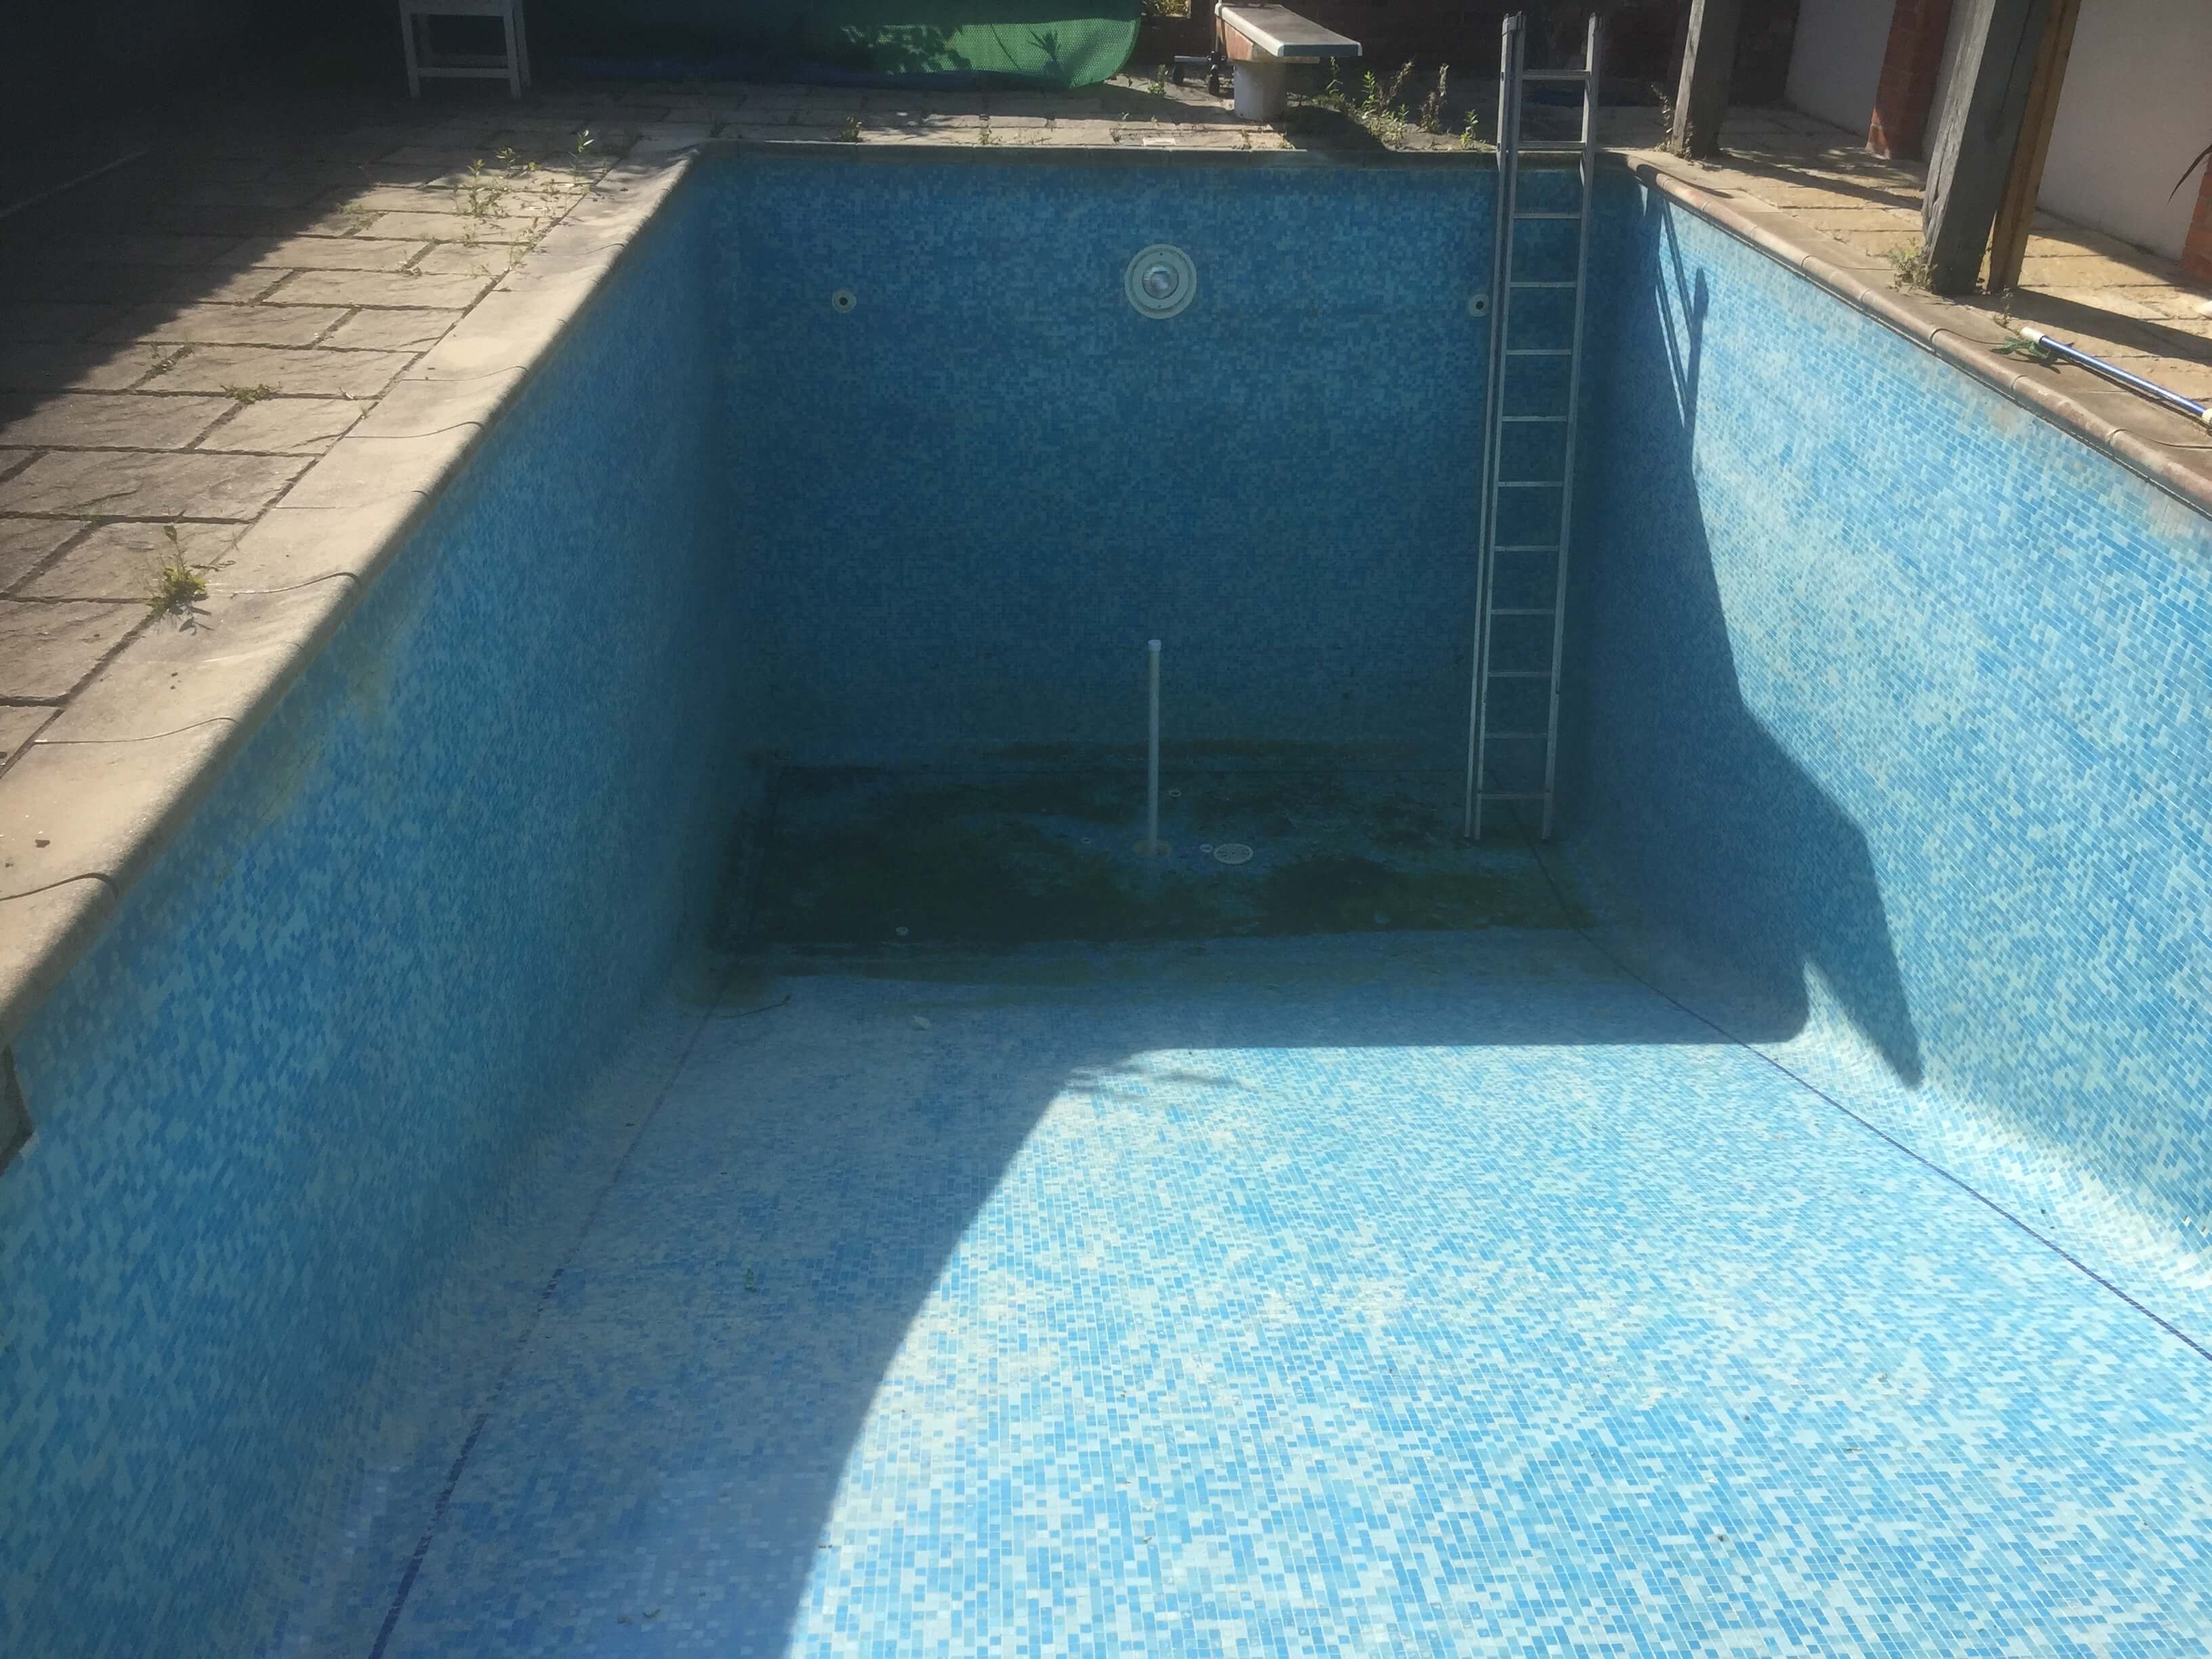 1st Direct Pools